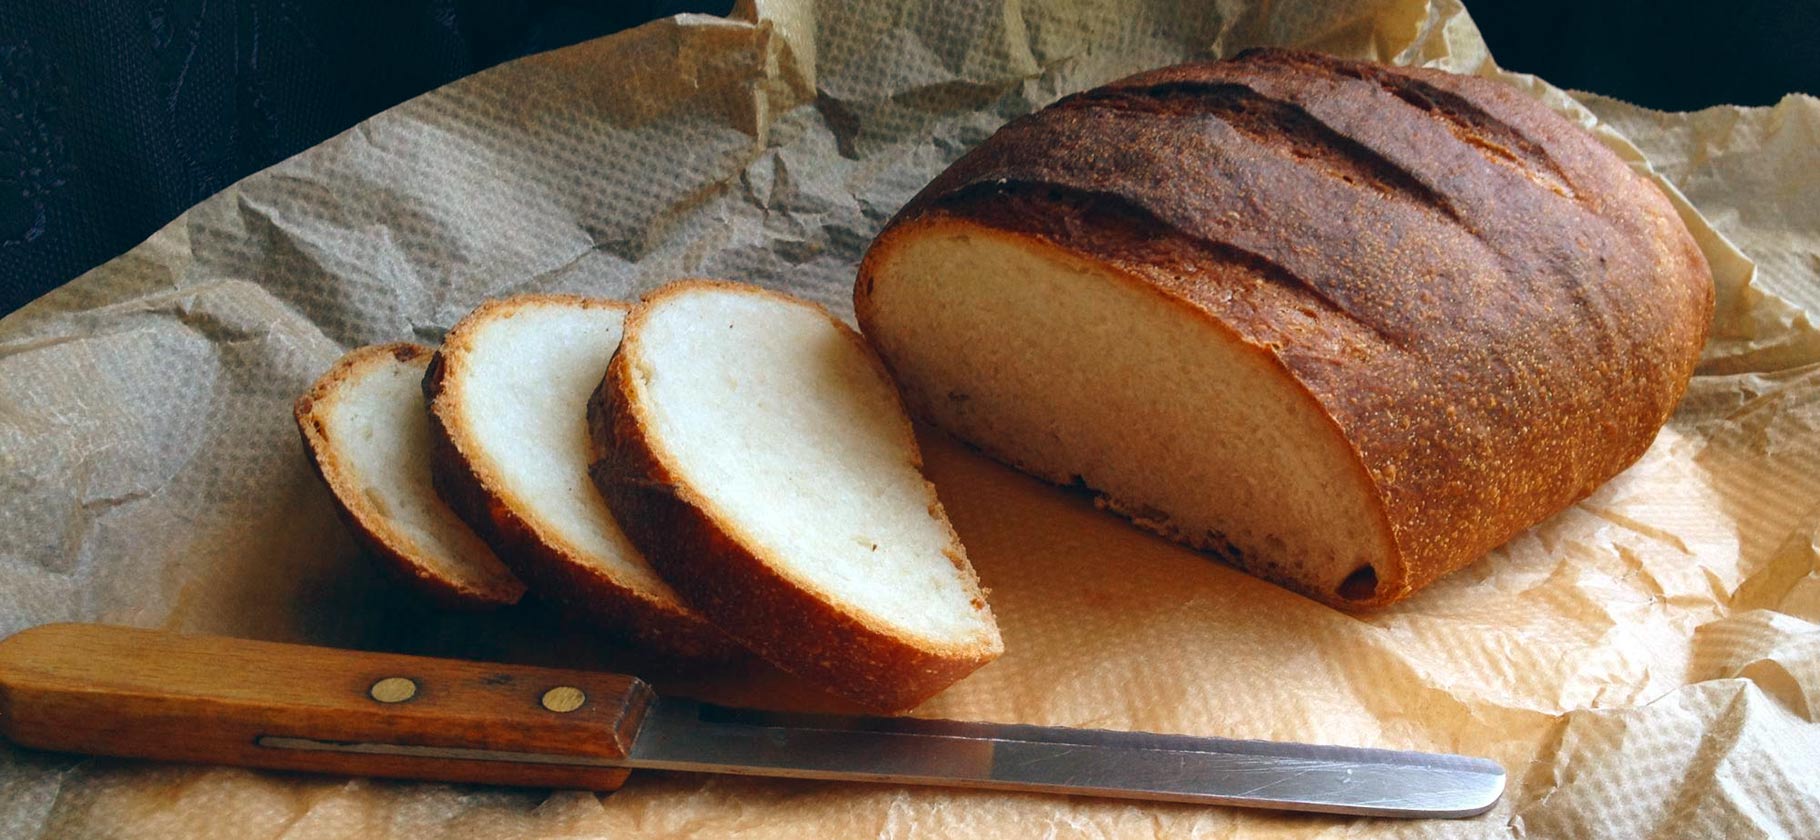 Как я пеку хлеб дома и сколько это стоит